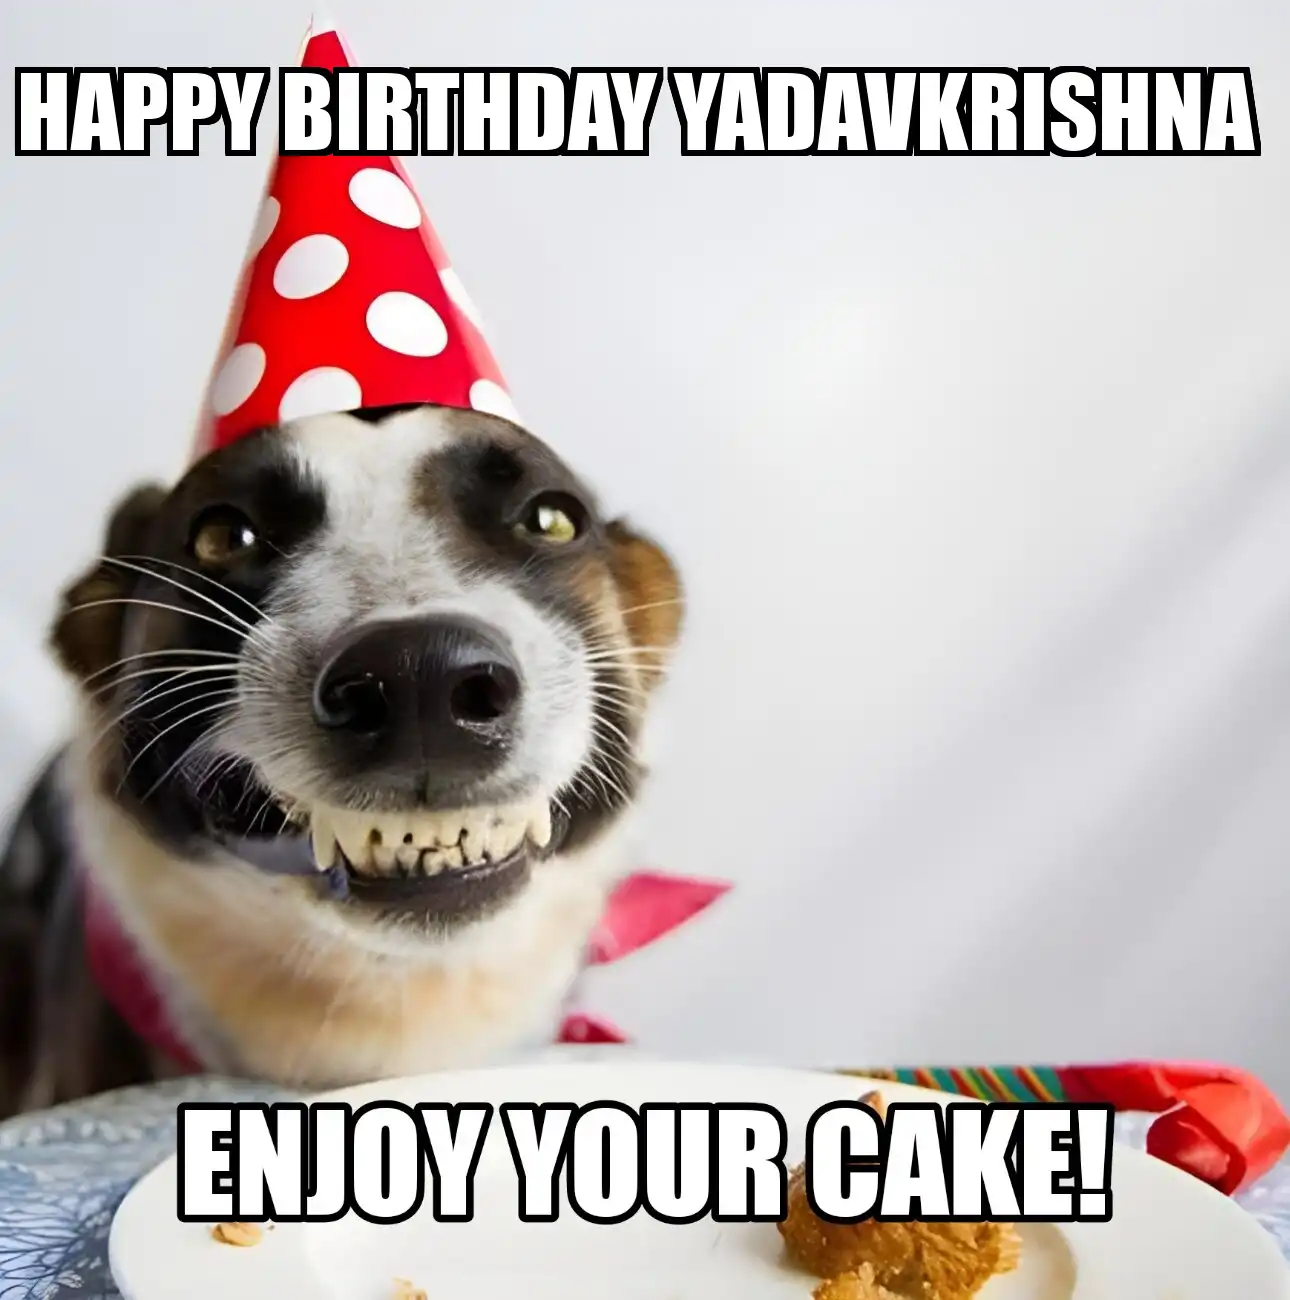 Happy Birthday Yadavkrishna Enjoy Your Cake Dog Meme